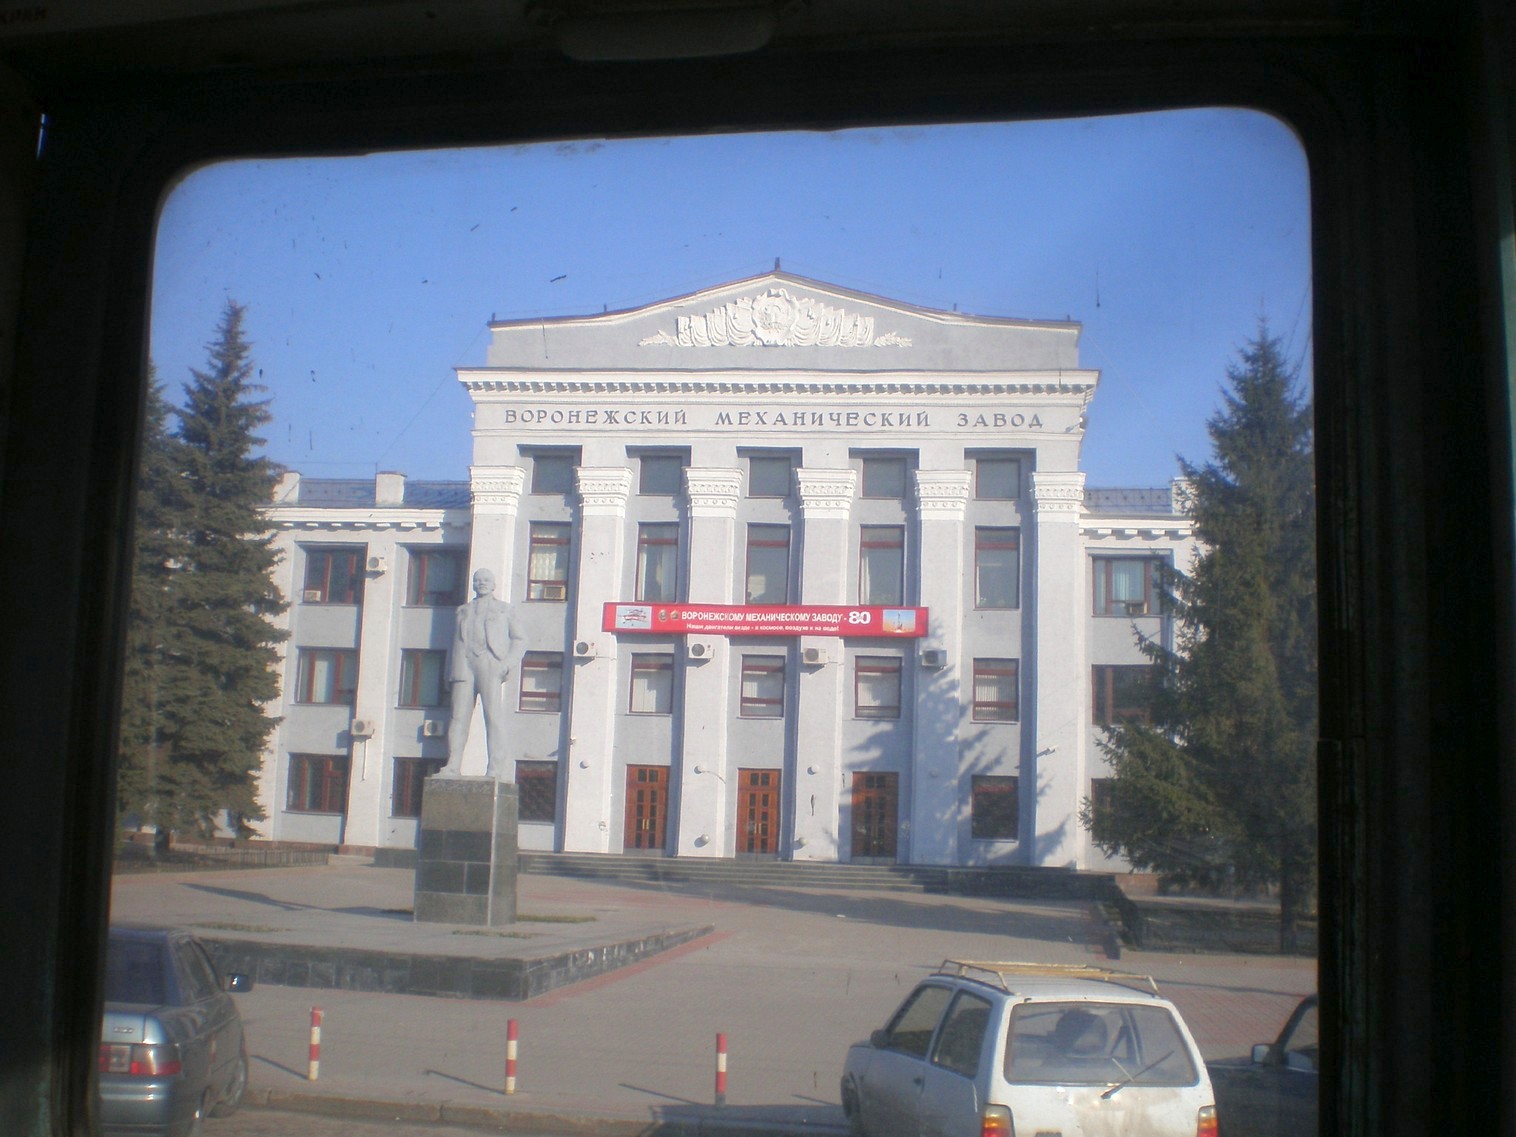 Воронежский трамвай  —  фотографии, сделанные в 2009 году (часть 3)